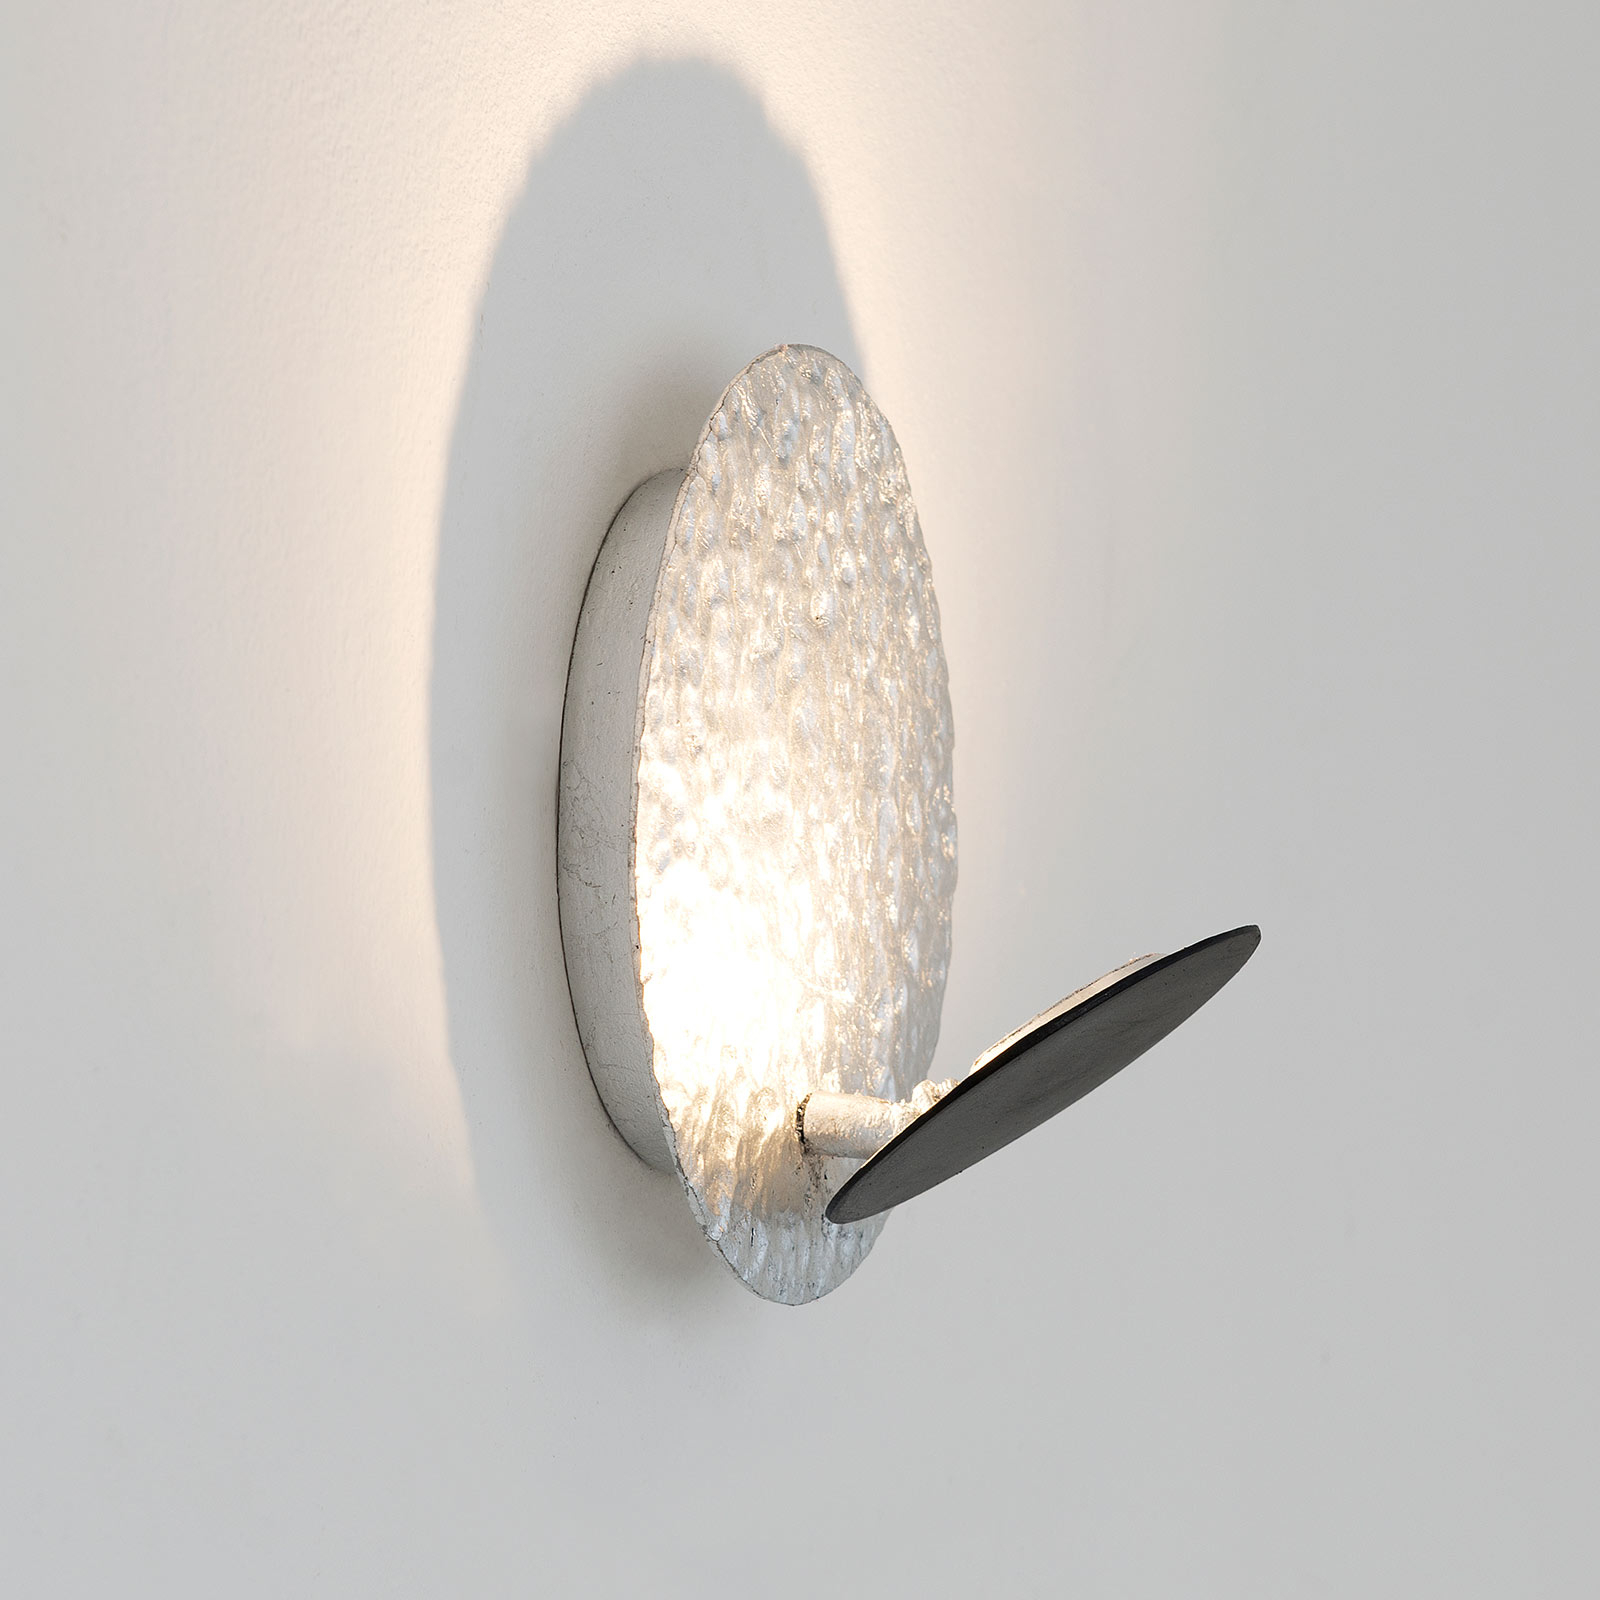 LED nástěnné světlo Infinity ve stříbrné, Ø 26 cm